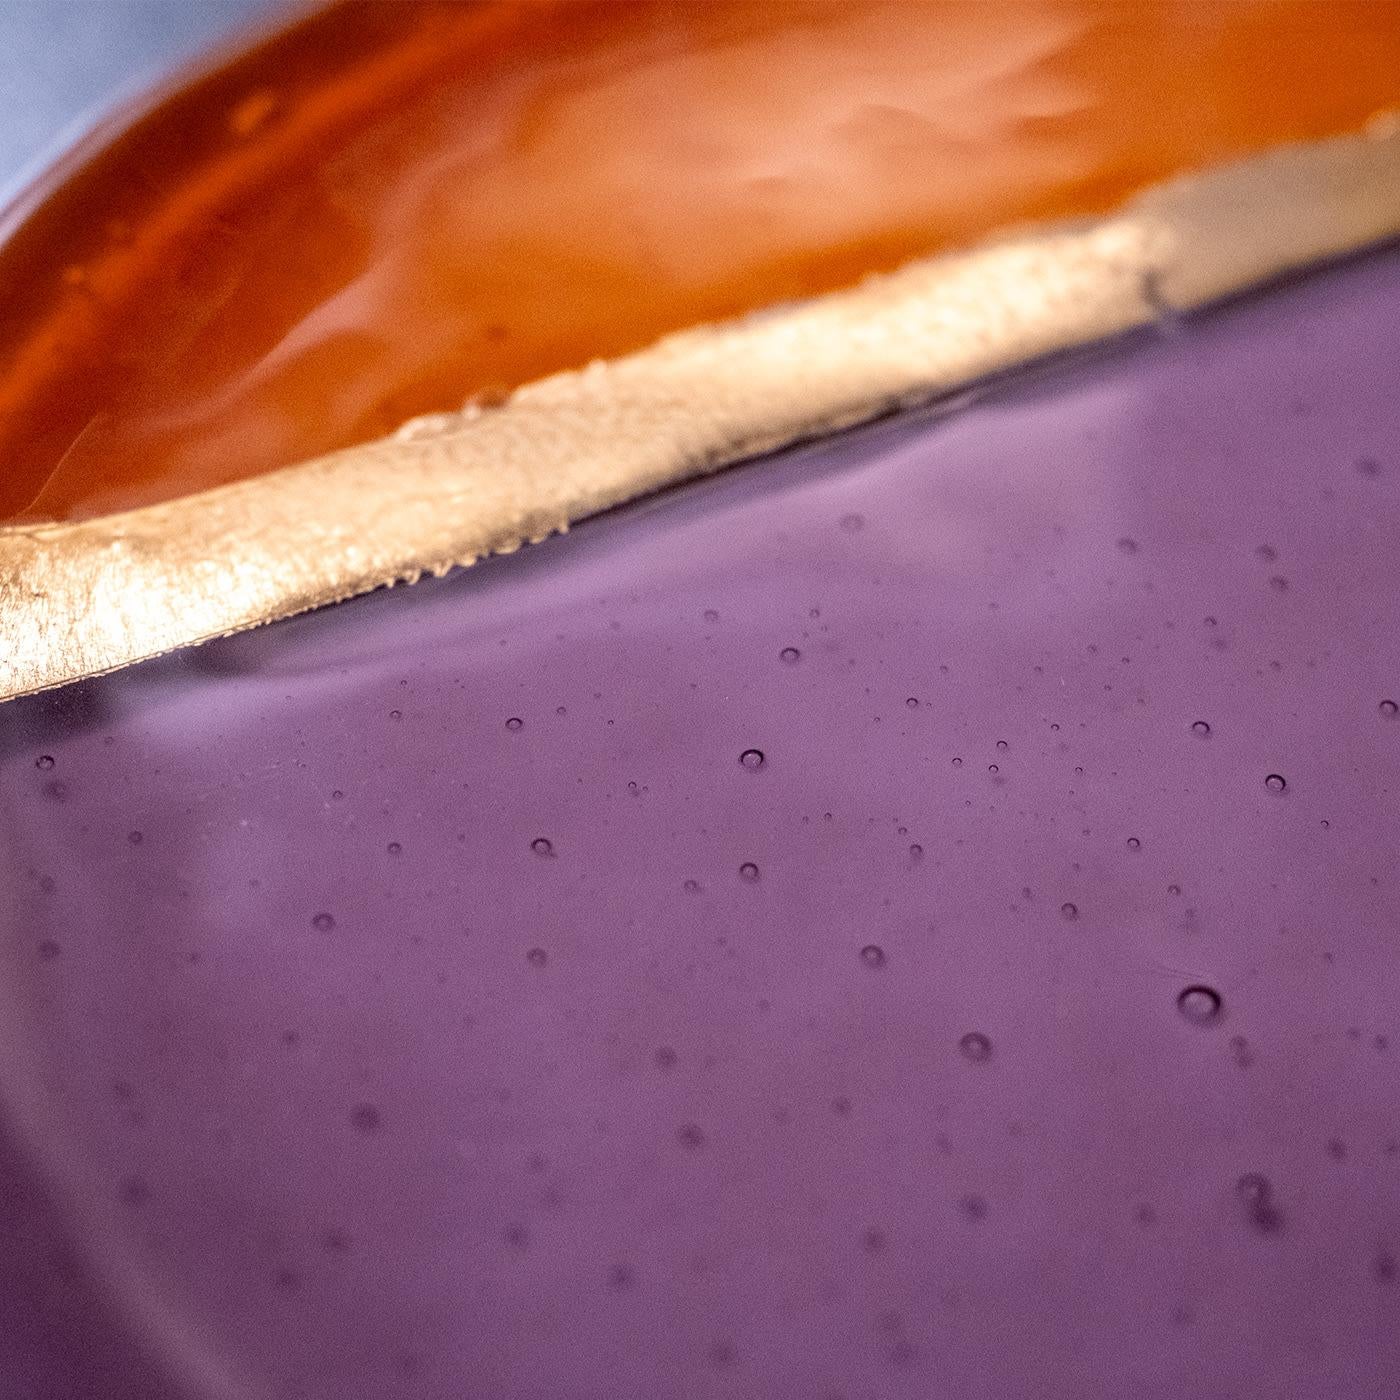 Le violet et l'orange se rencontrent dans ce plat exquis et sont séparés par une bande d'or vif. Ce design élégant et moderne ajoutera une touche de couleur et de sophistication à toute table à manger. Il peut être associé à des identiques pour un